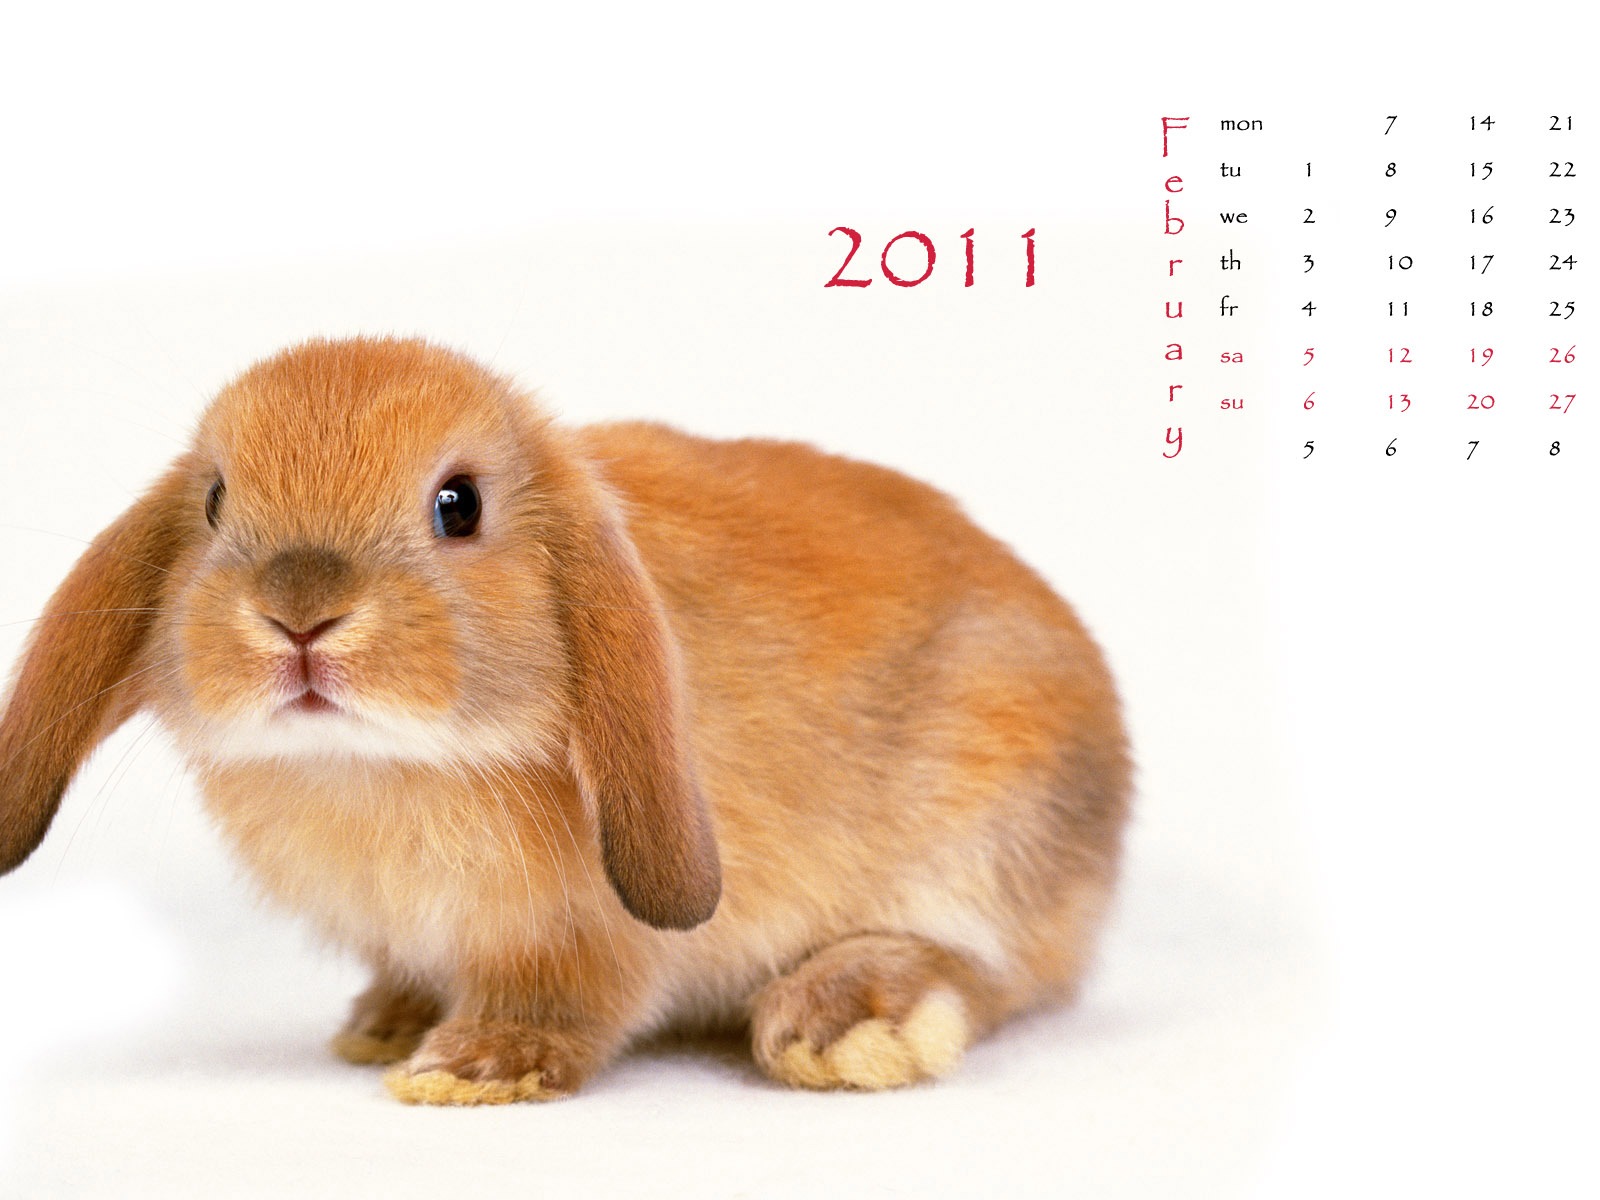 2011兔年日历 壁纸(一)1 - 1600x1200